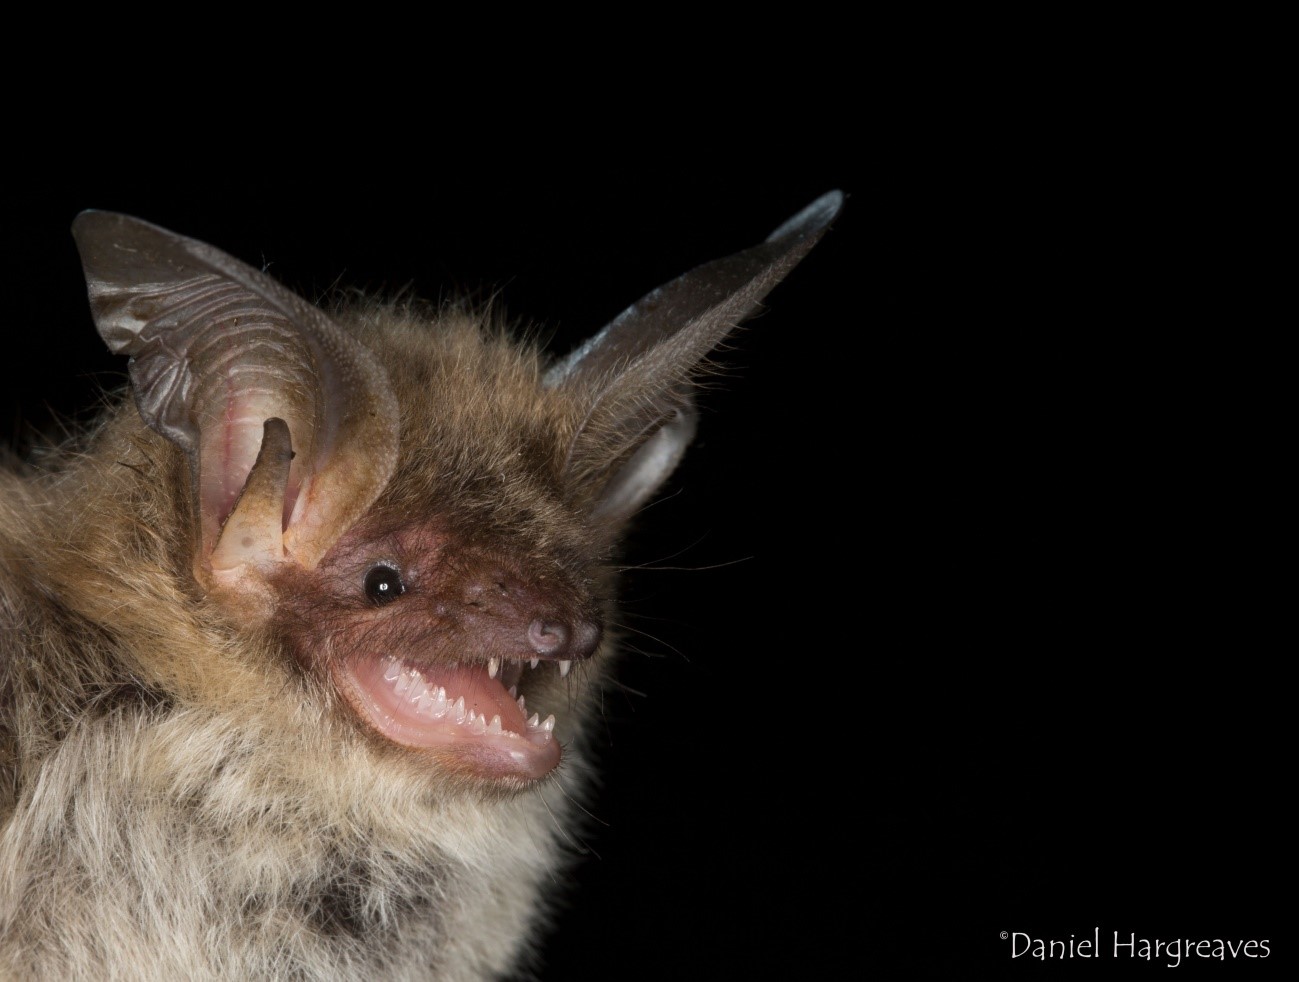 Bechstein's bat image showing head